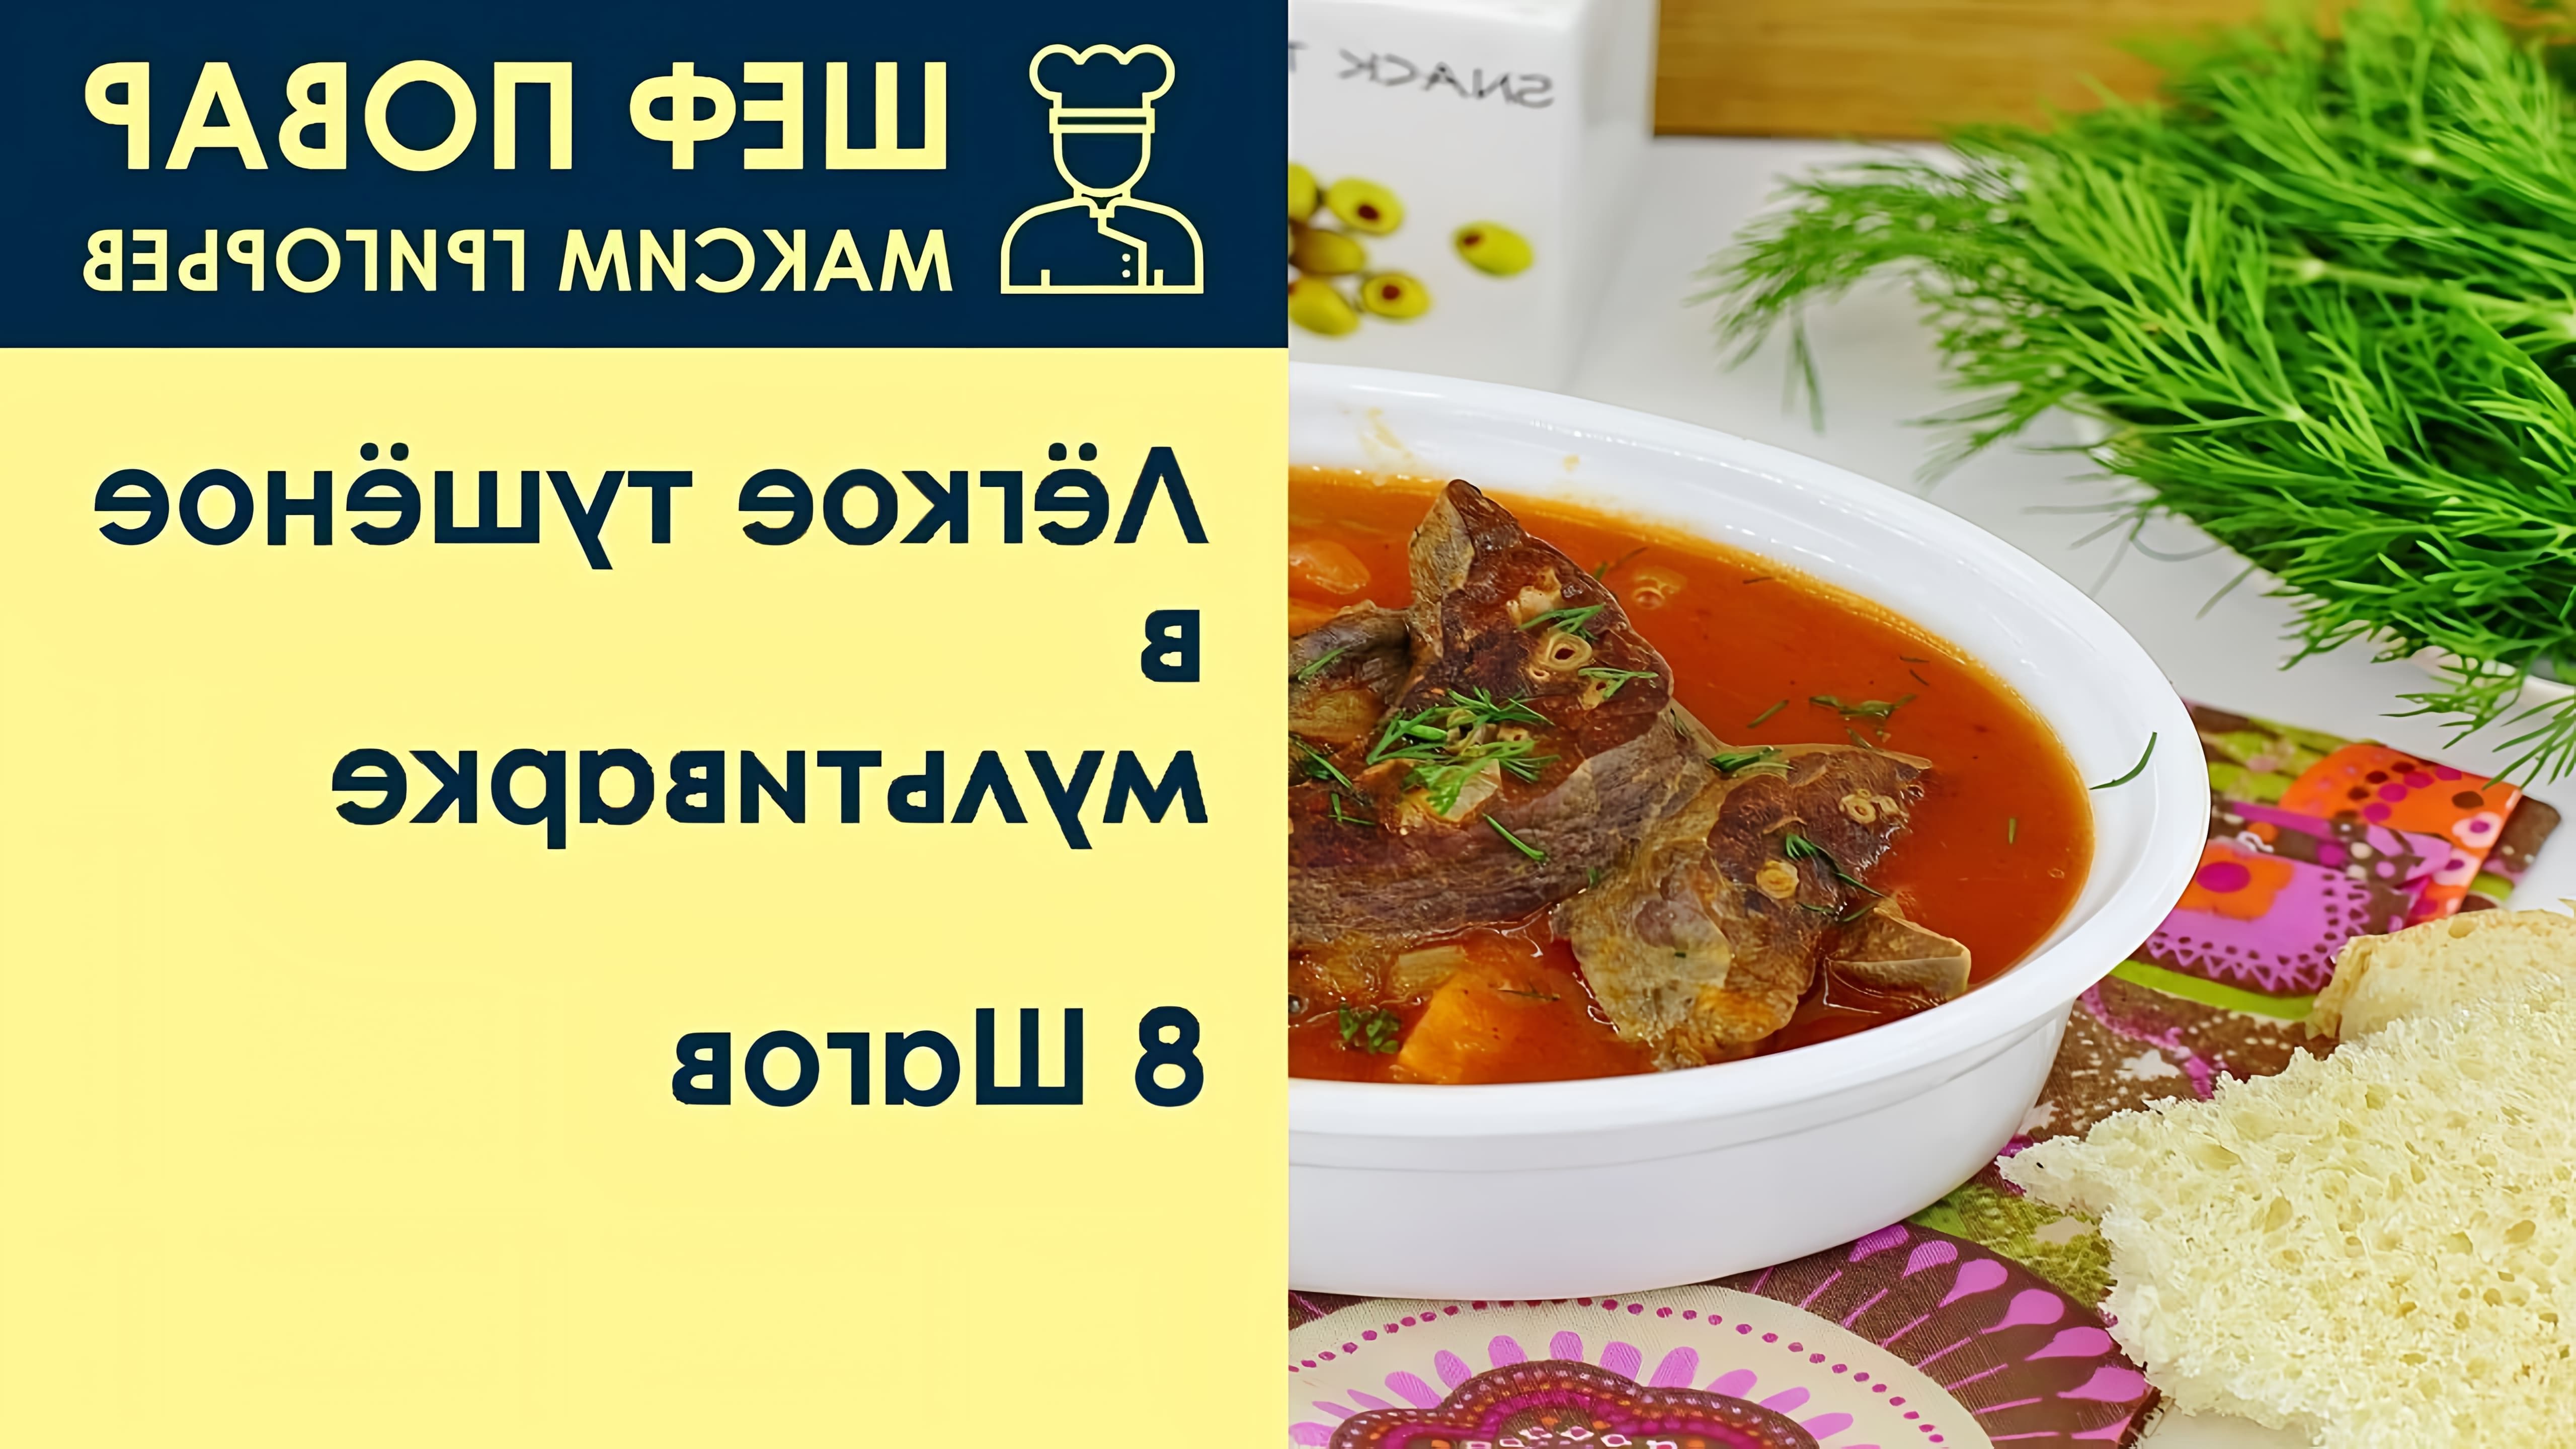 В данном видео шеф-повар Максим Григорьев предлагает рецепт легкого тушеного в мультиварке блюда